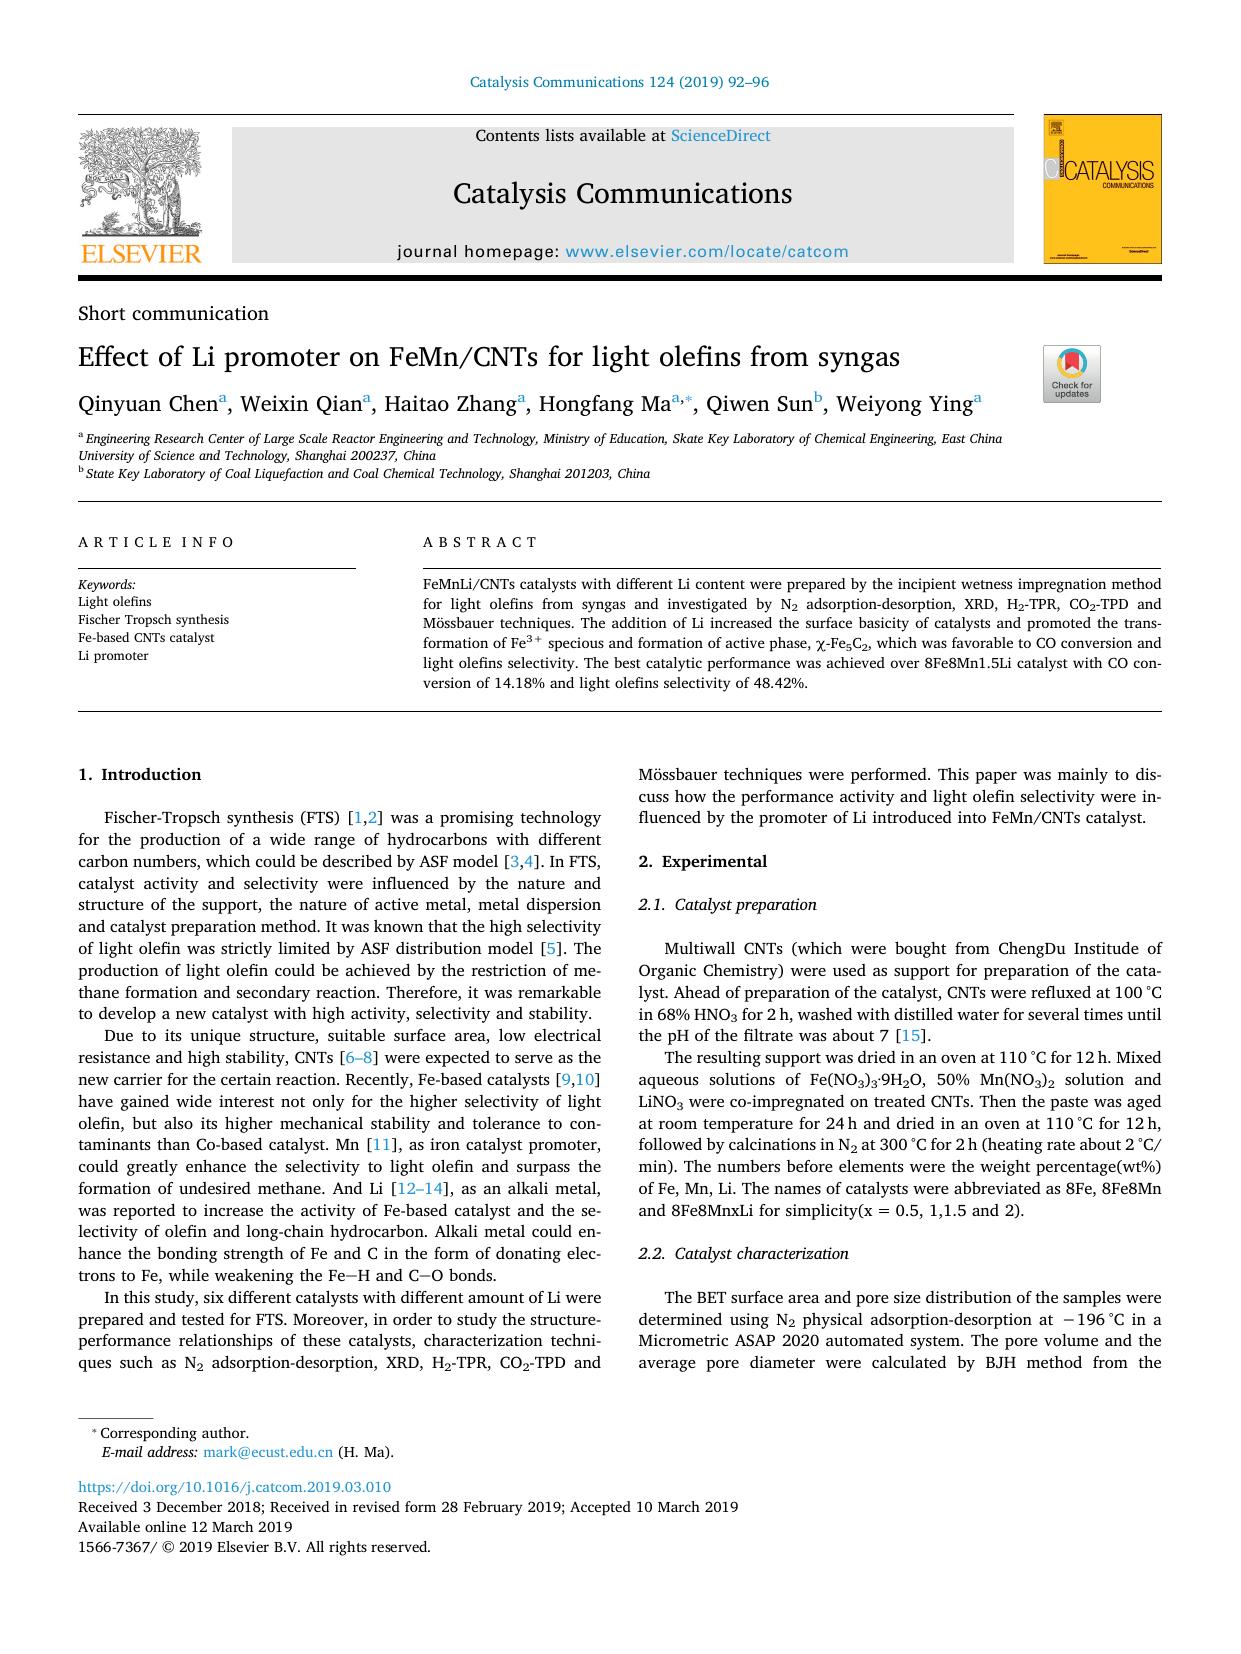 Effect of Li promoter on FeMnCNTs for light olefins from syngas by Qinyuan Chen & Weixin Qian & Haitao Zhang & Hongfang Ma & Qiwen Sun & Weiyong Ying